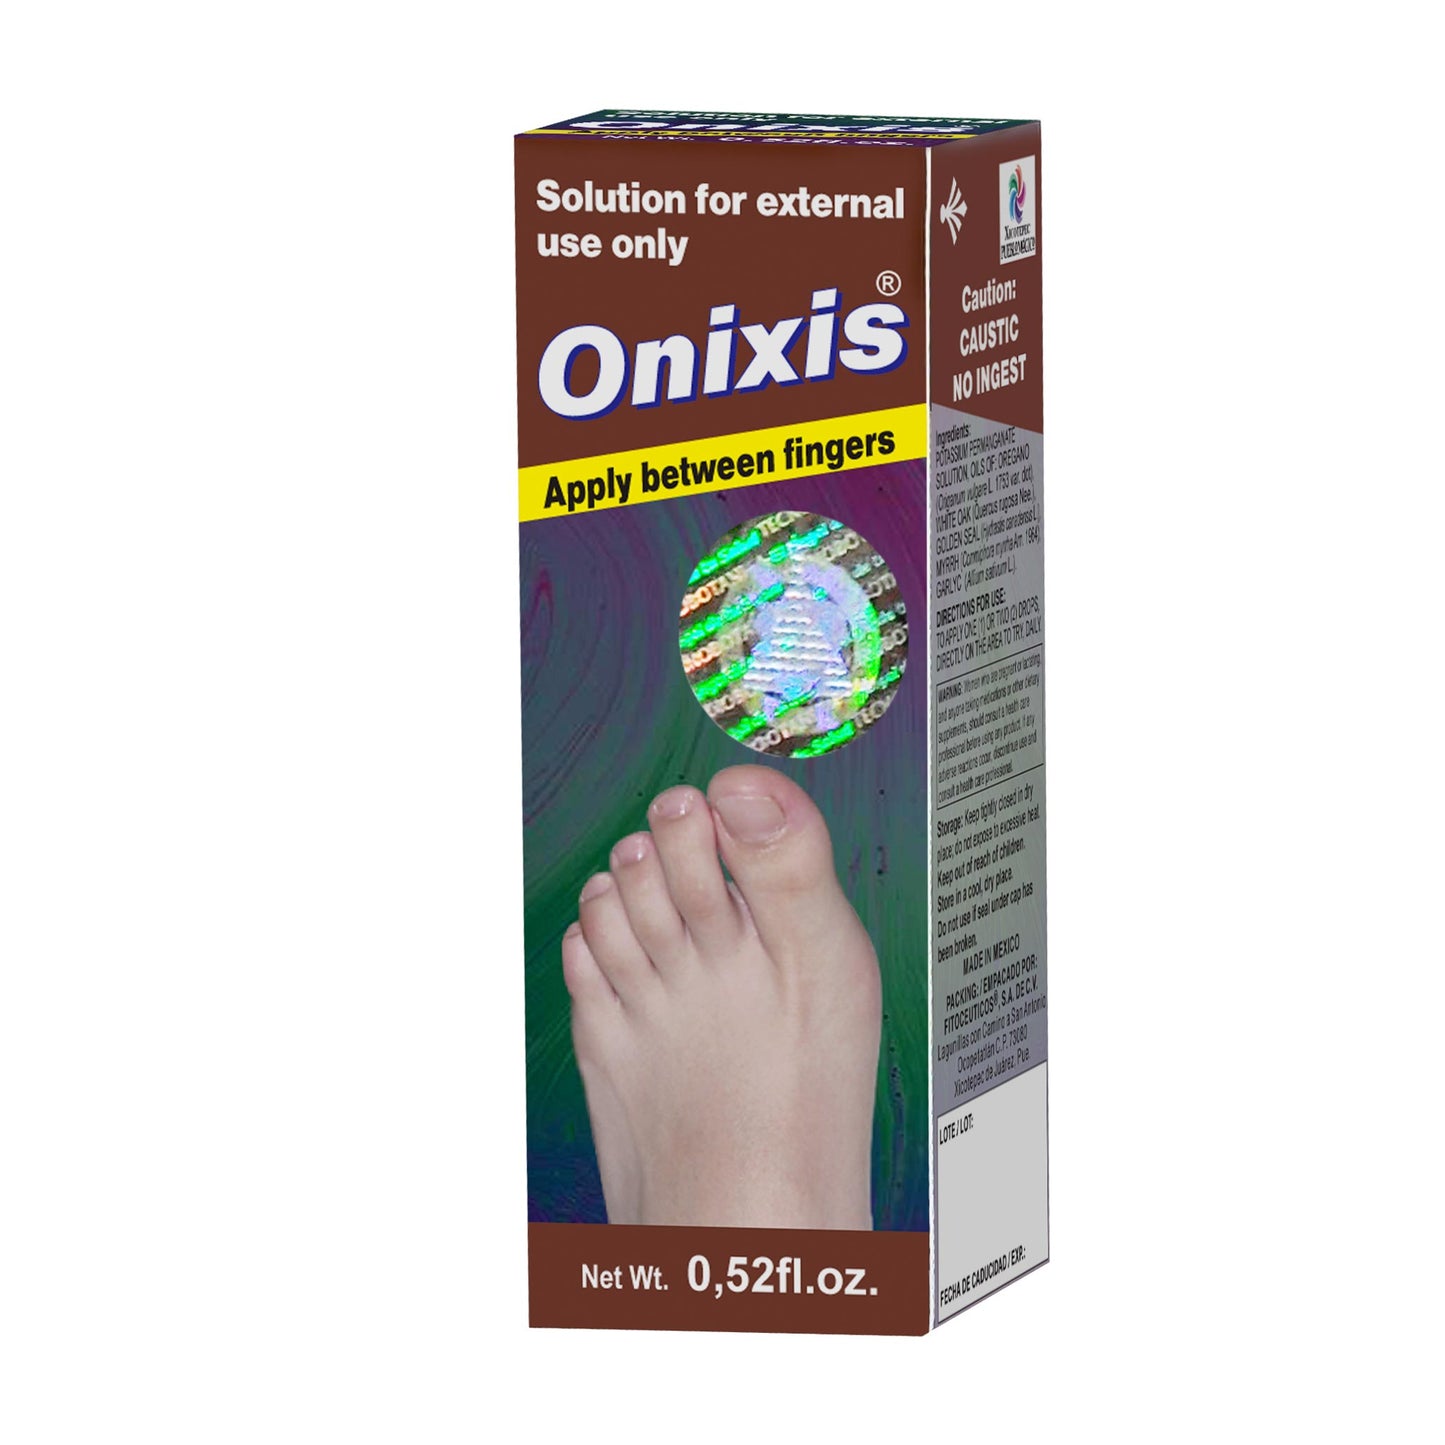 ONIXIS ® solución externa pie 15ml